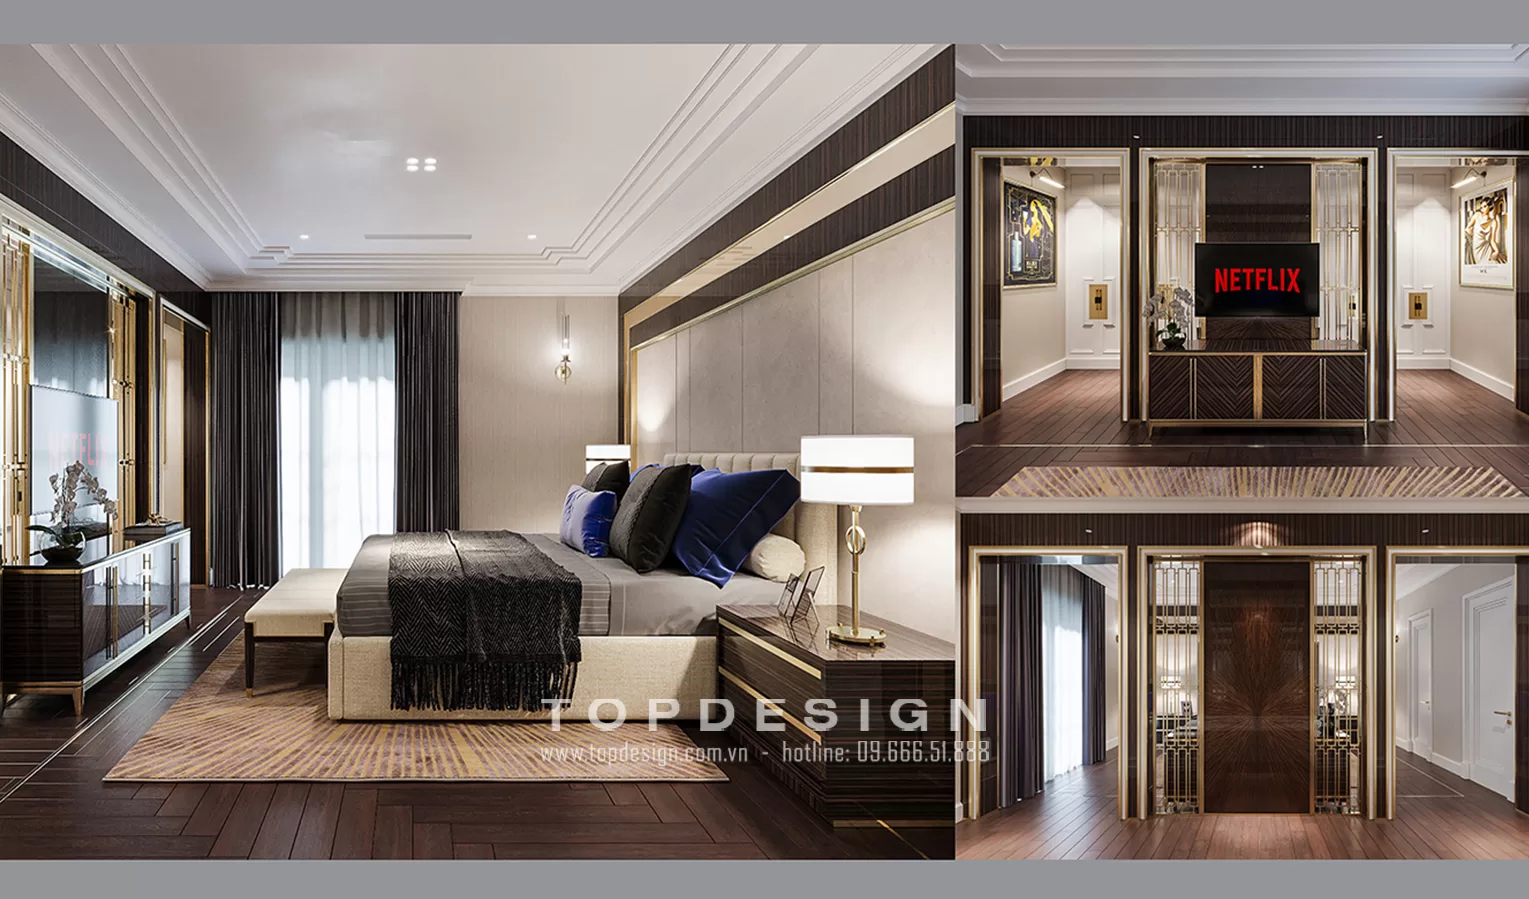 Thiết kế nội thất biệt thự phong cách tân cổ điển - TOPDESIGN - 3